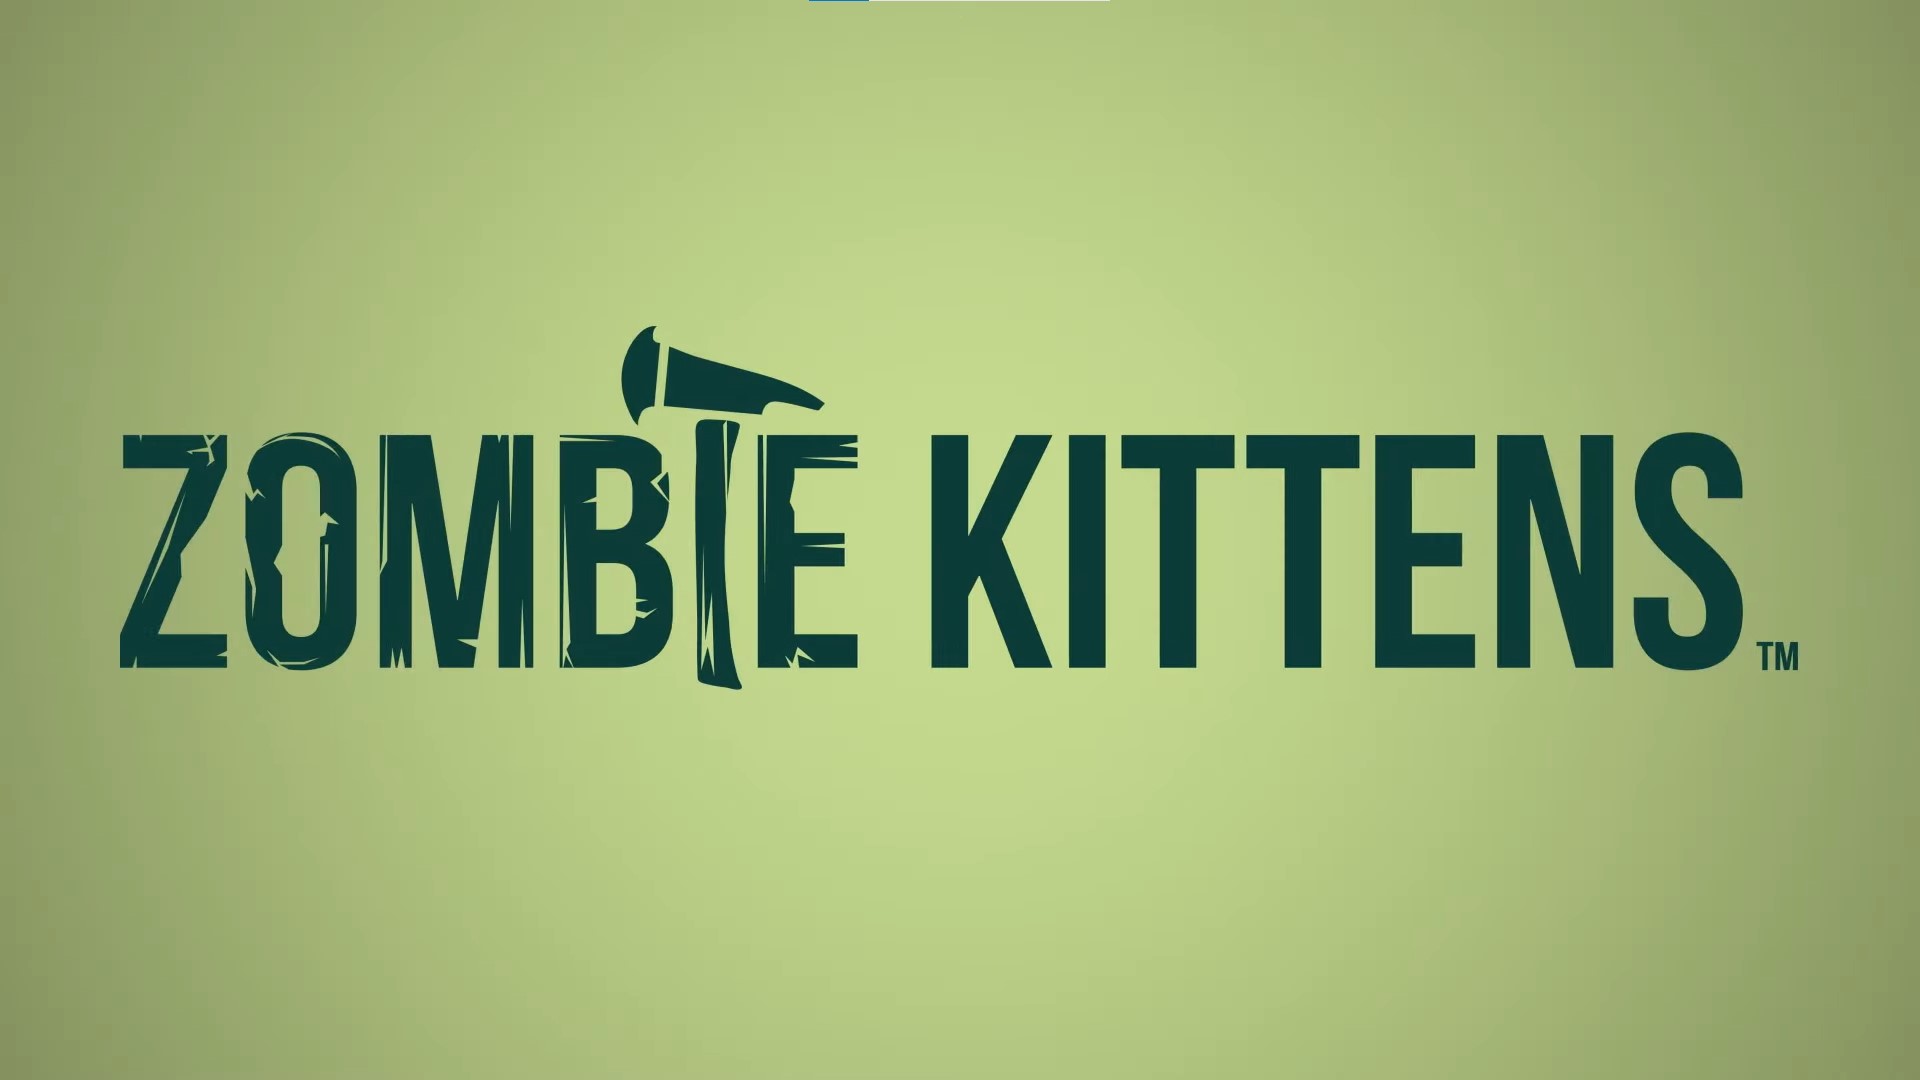 https://images.beastsofwar.com/2022/06/Zombie-Kittens-Exploding-Kittens-.jpg